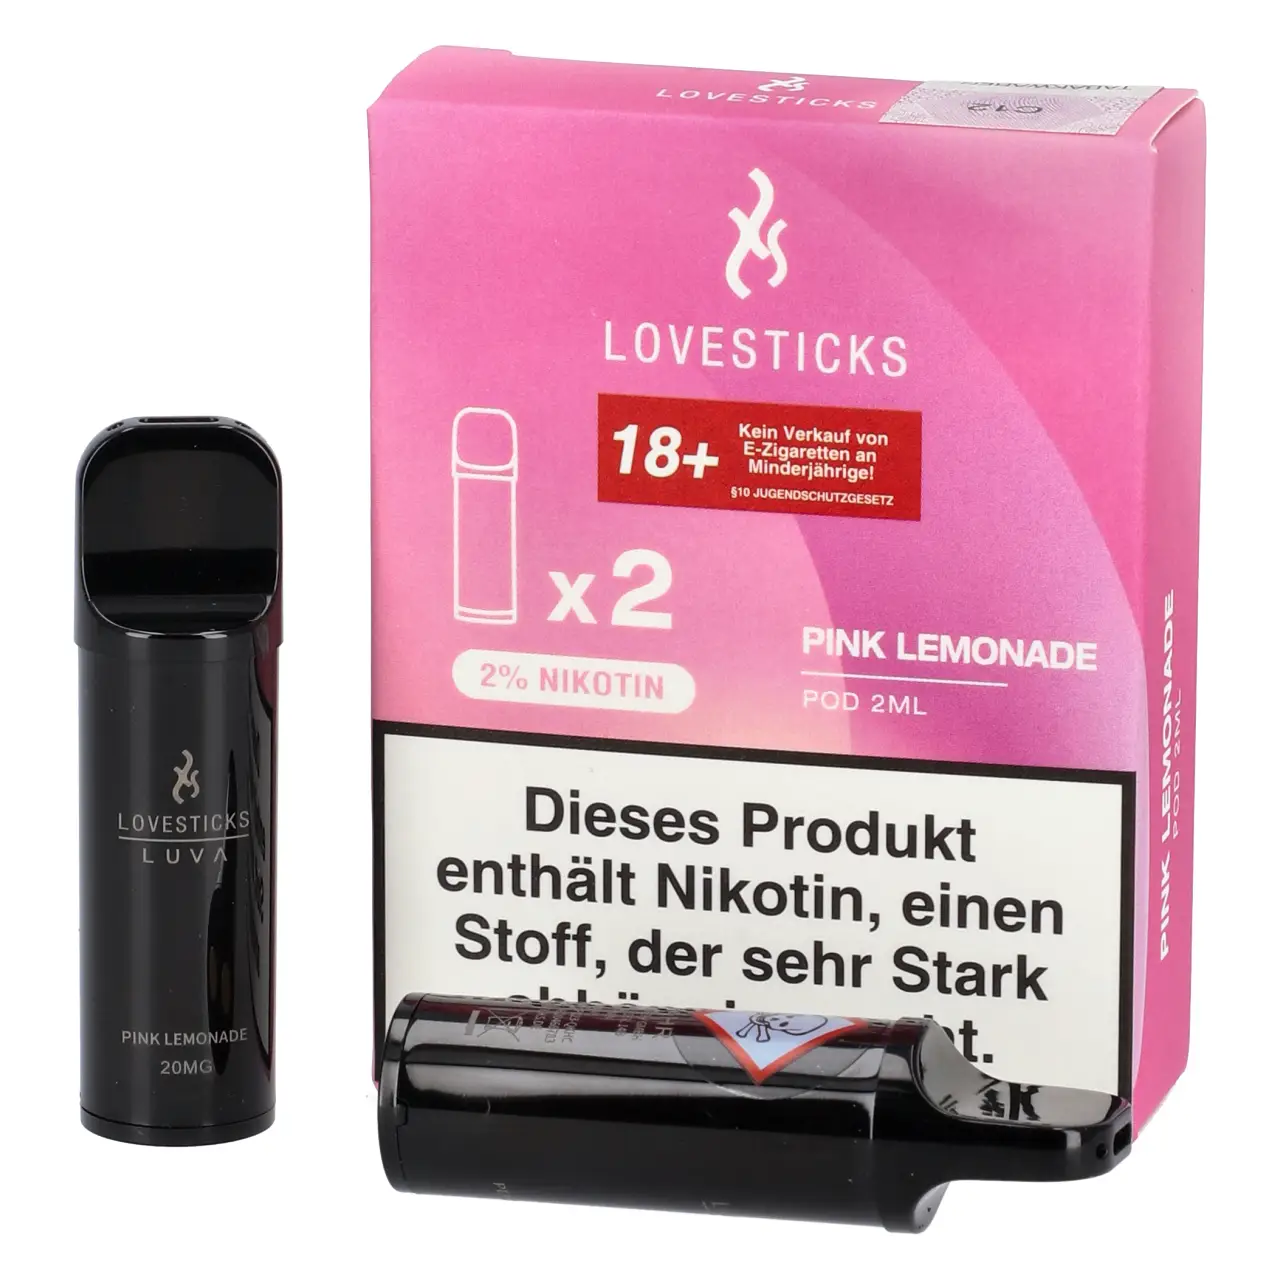 Pink Lemonade - Lovesticks Luva Prefilled Pod - 2er Packung